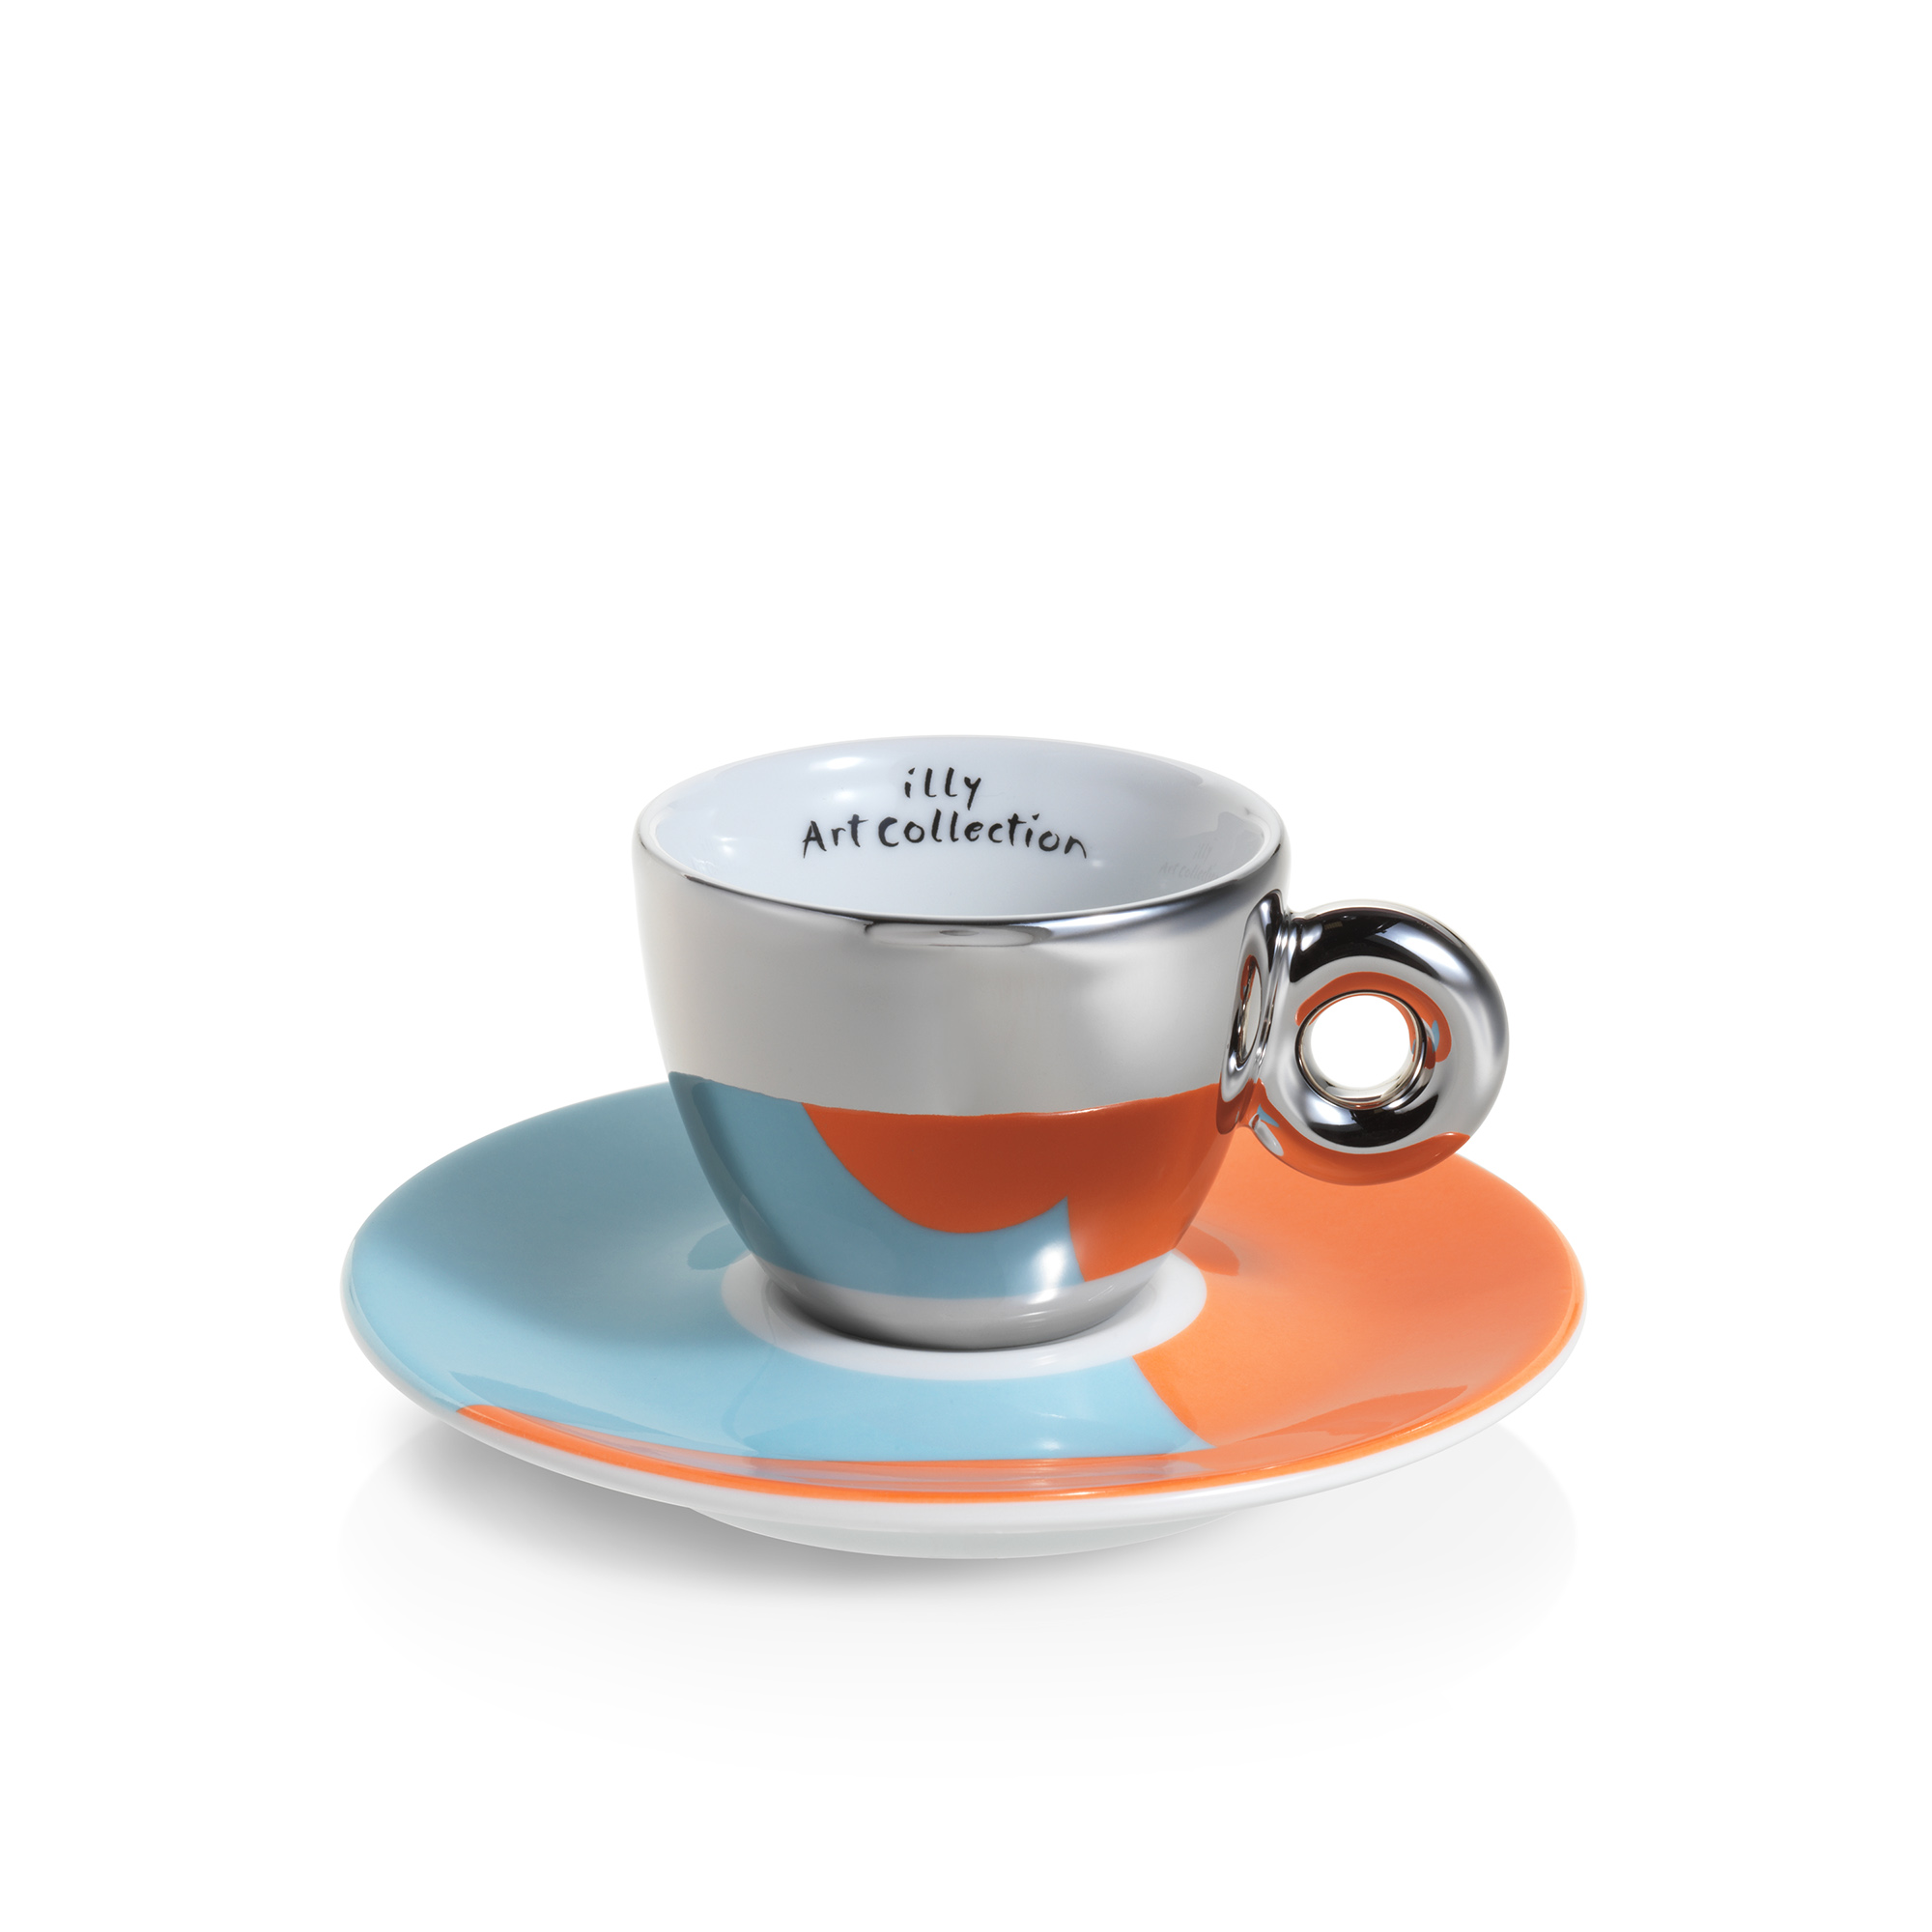 Verplaatsbaar Australische persoon openbaar illy Art Collection Stefan Sagmeister Set of 2 espresso cups – illy jo